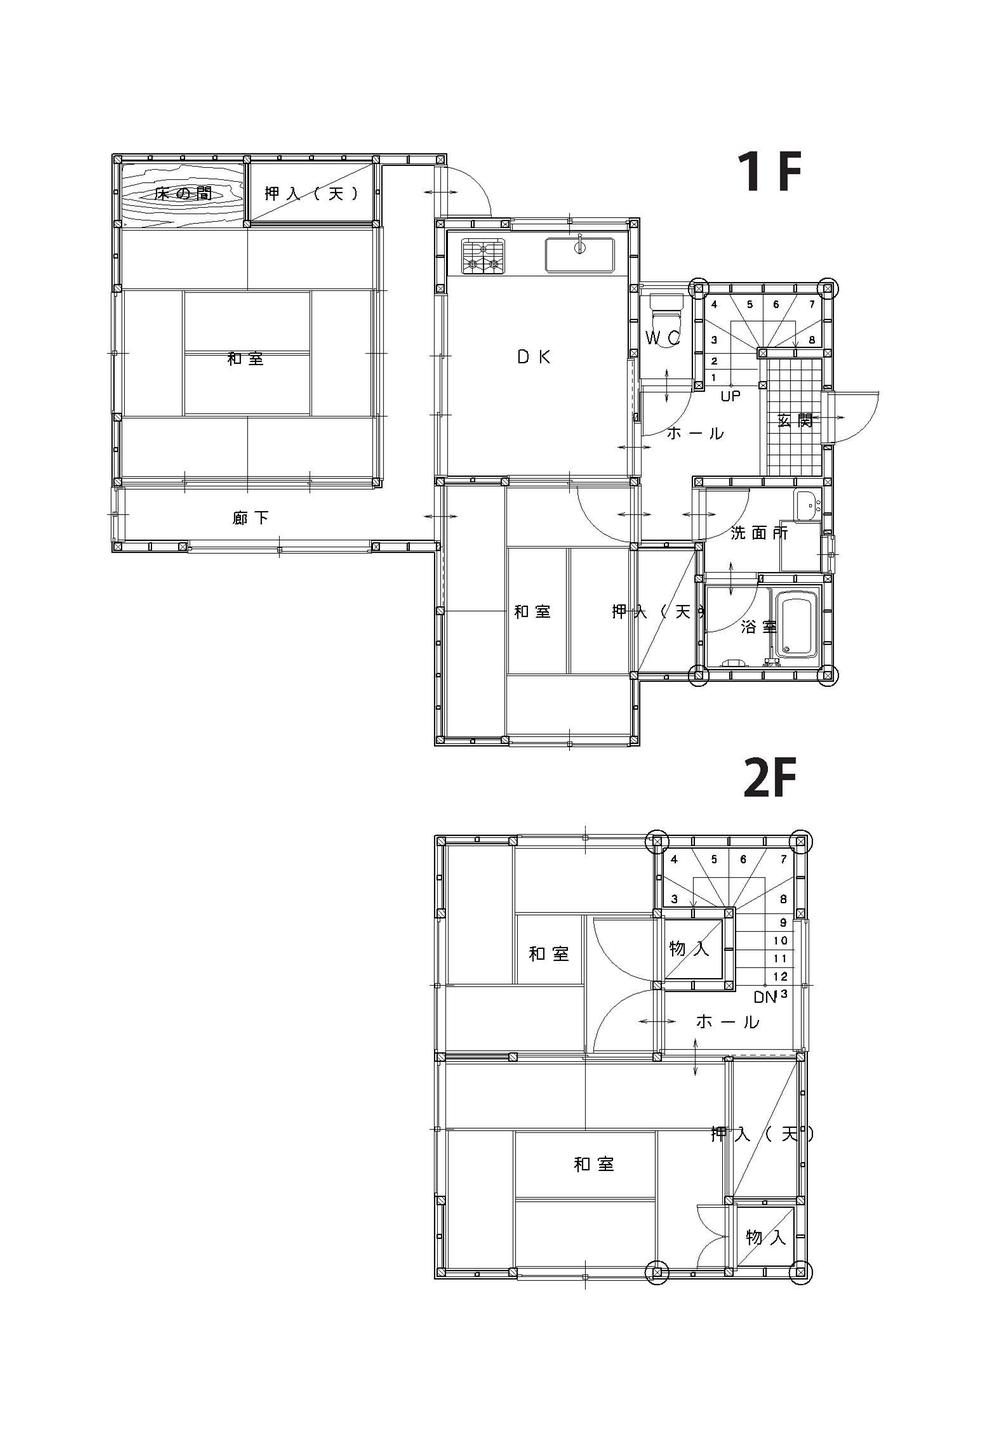 Floor plan. 9.8 million yen, 4DK, Land area 178.8 sq m , Building area 85.94 sq m